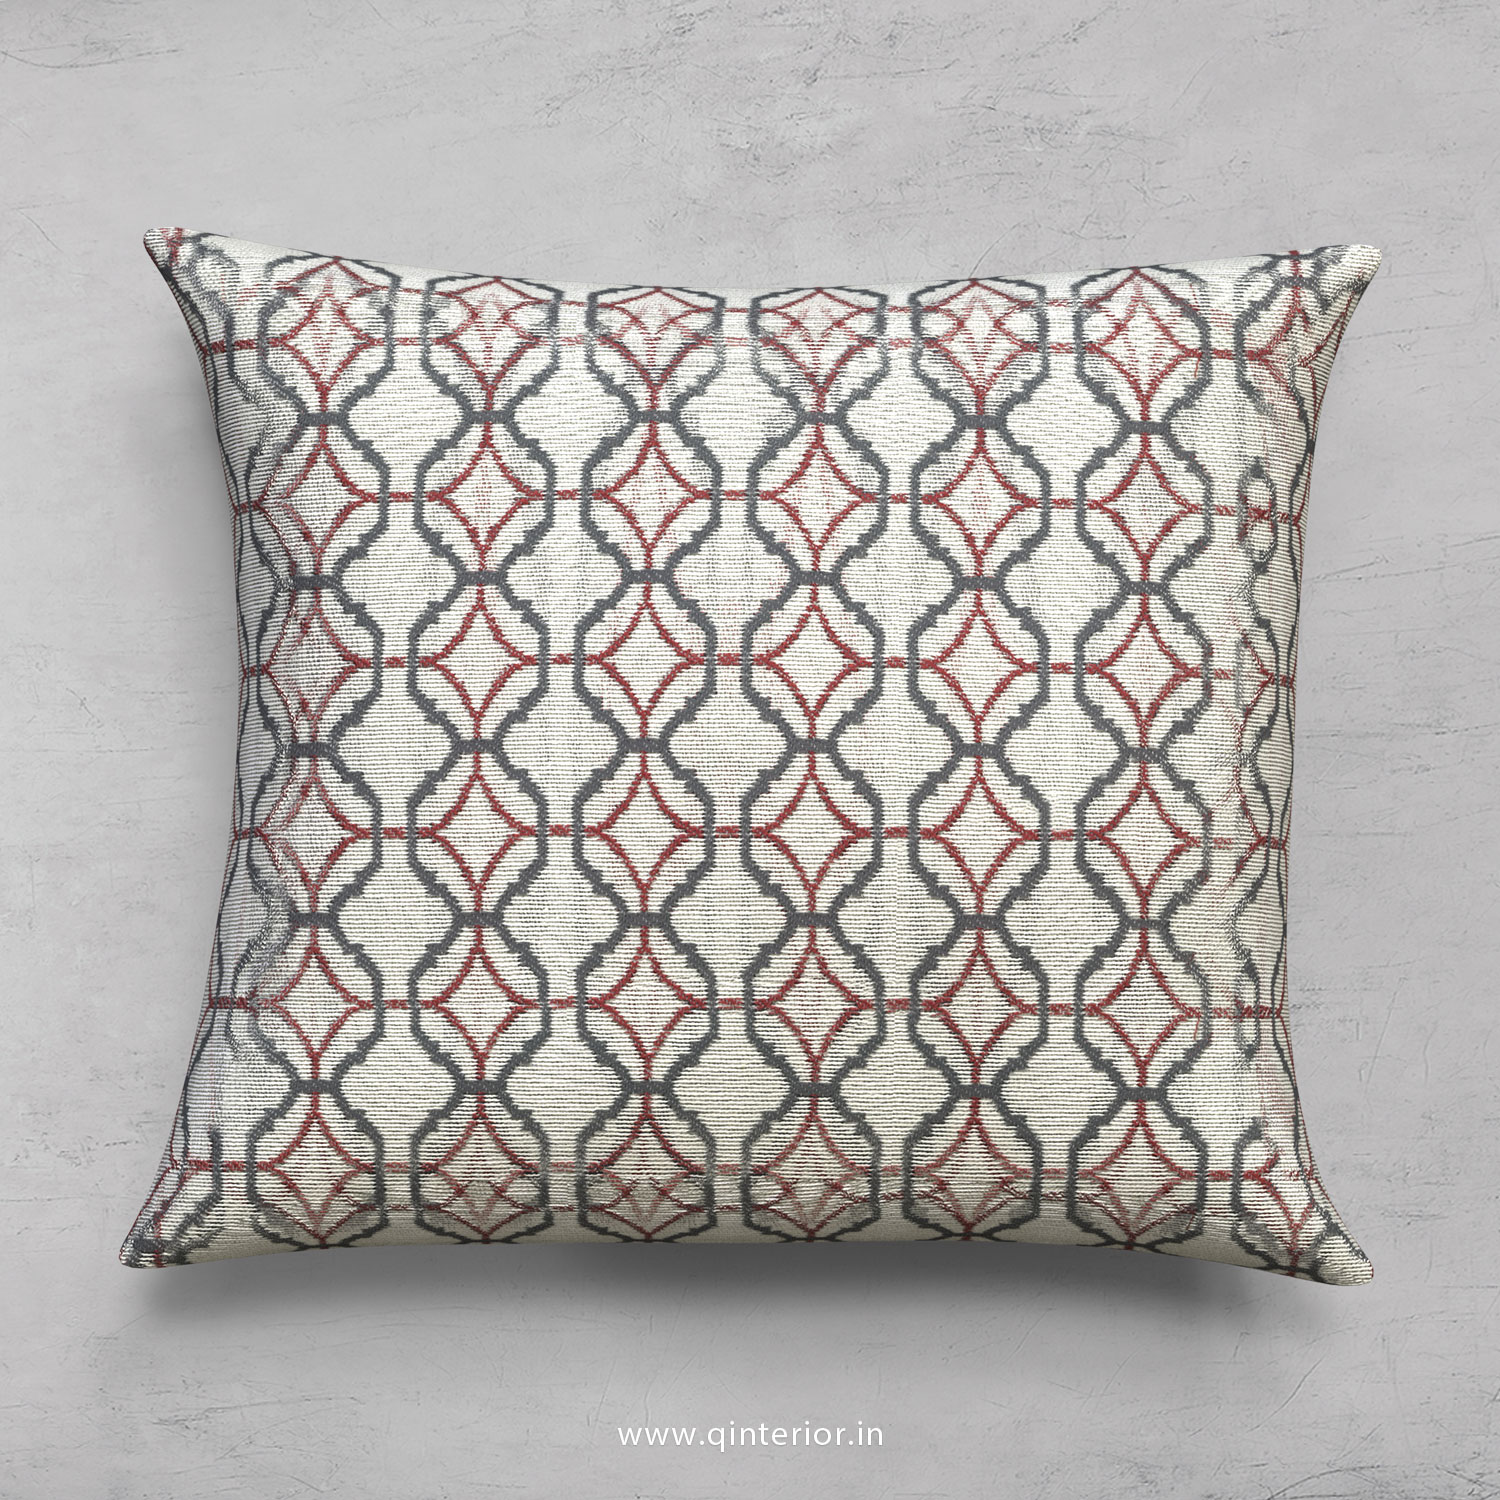 Cushion With Cushion Cover in Jacquard- CUS001 JQ34